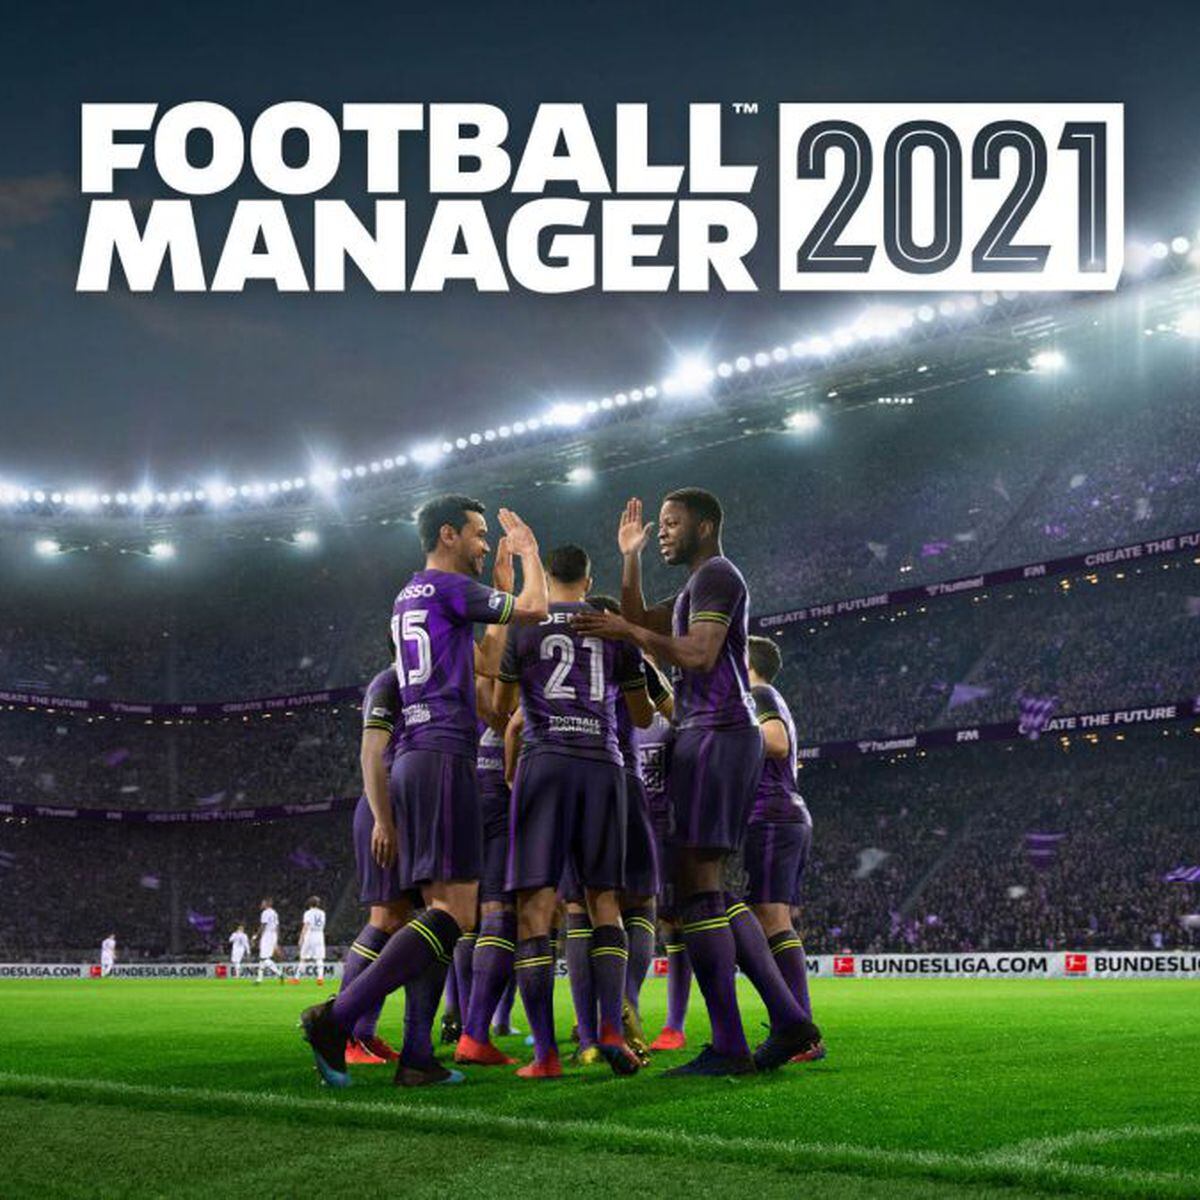 Managerzone , lleva a tu equipo a la gloria en este gran juego de Futbol  Online 